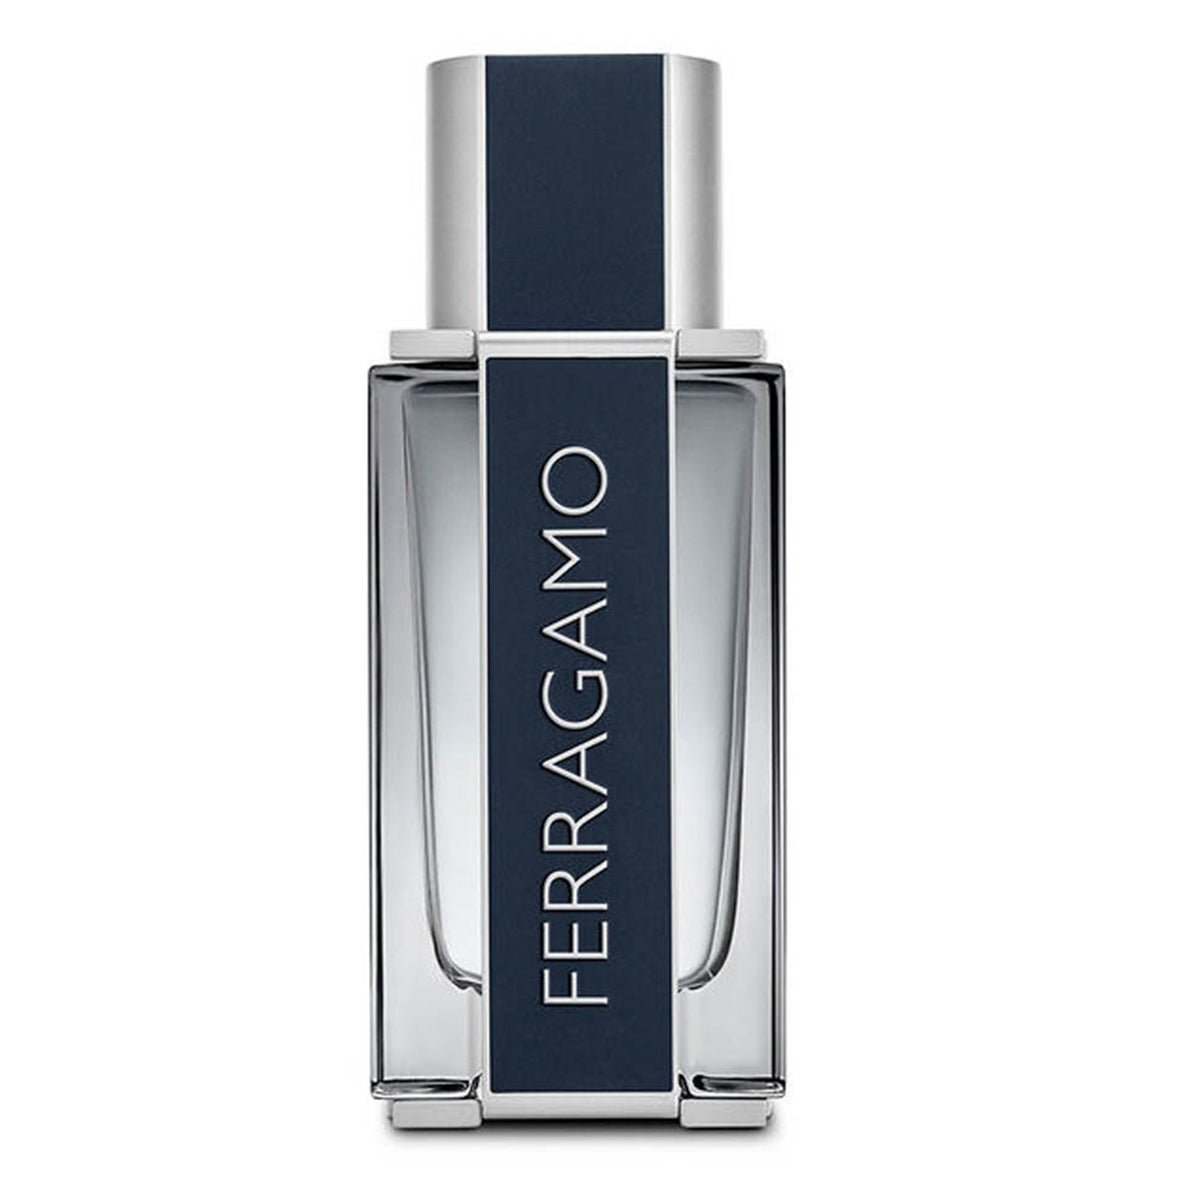 Salvatore Ferragamo Edt For Men 100ml-Perfume - AllurebeautypkSalvatore Ferragamo Edt For Men 100ml-Perfume